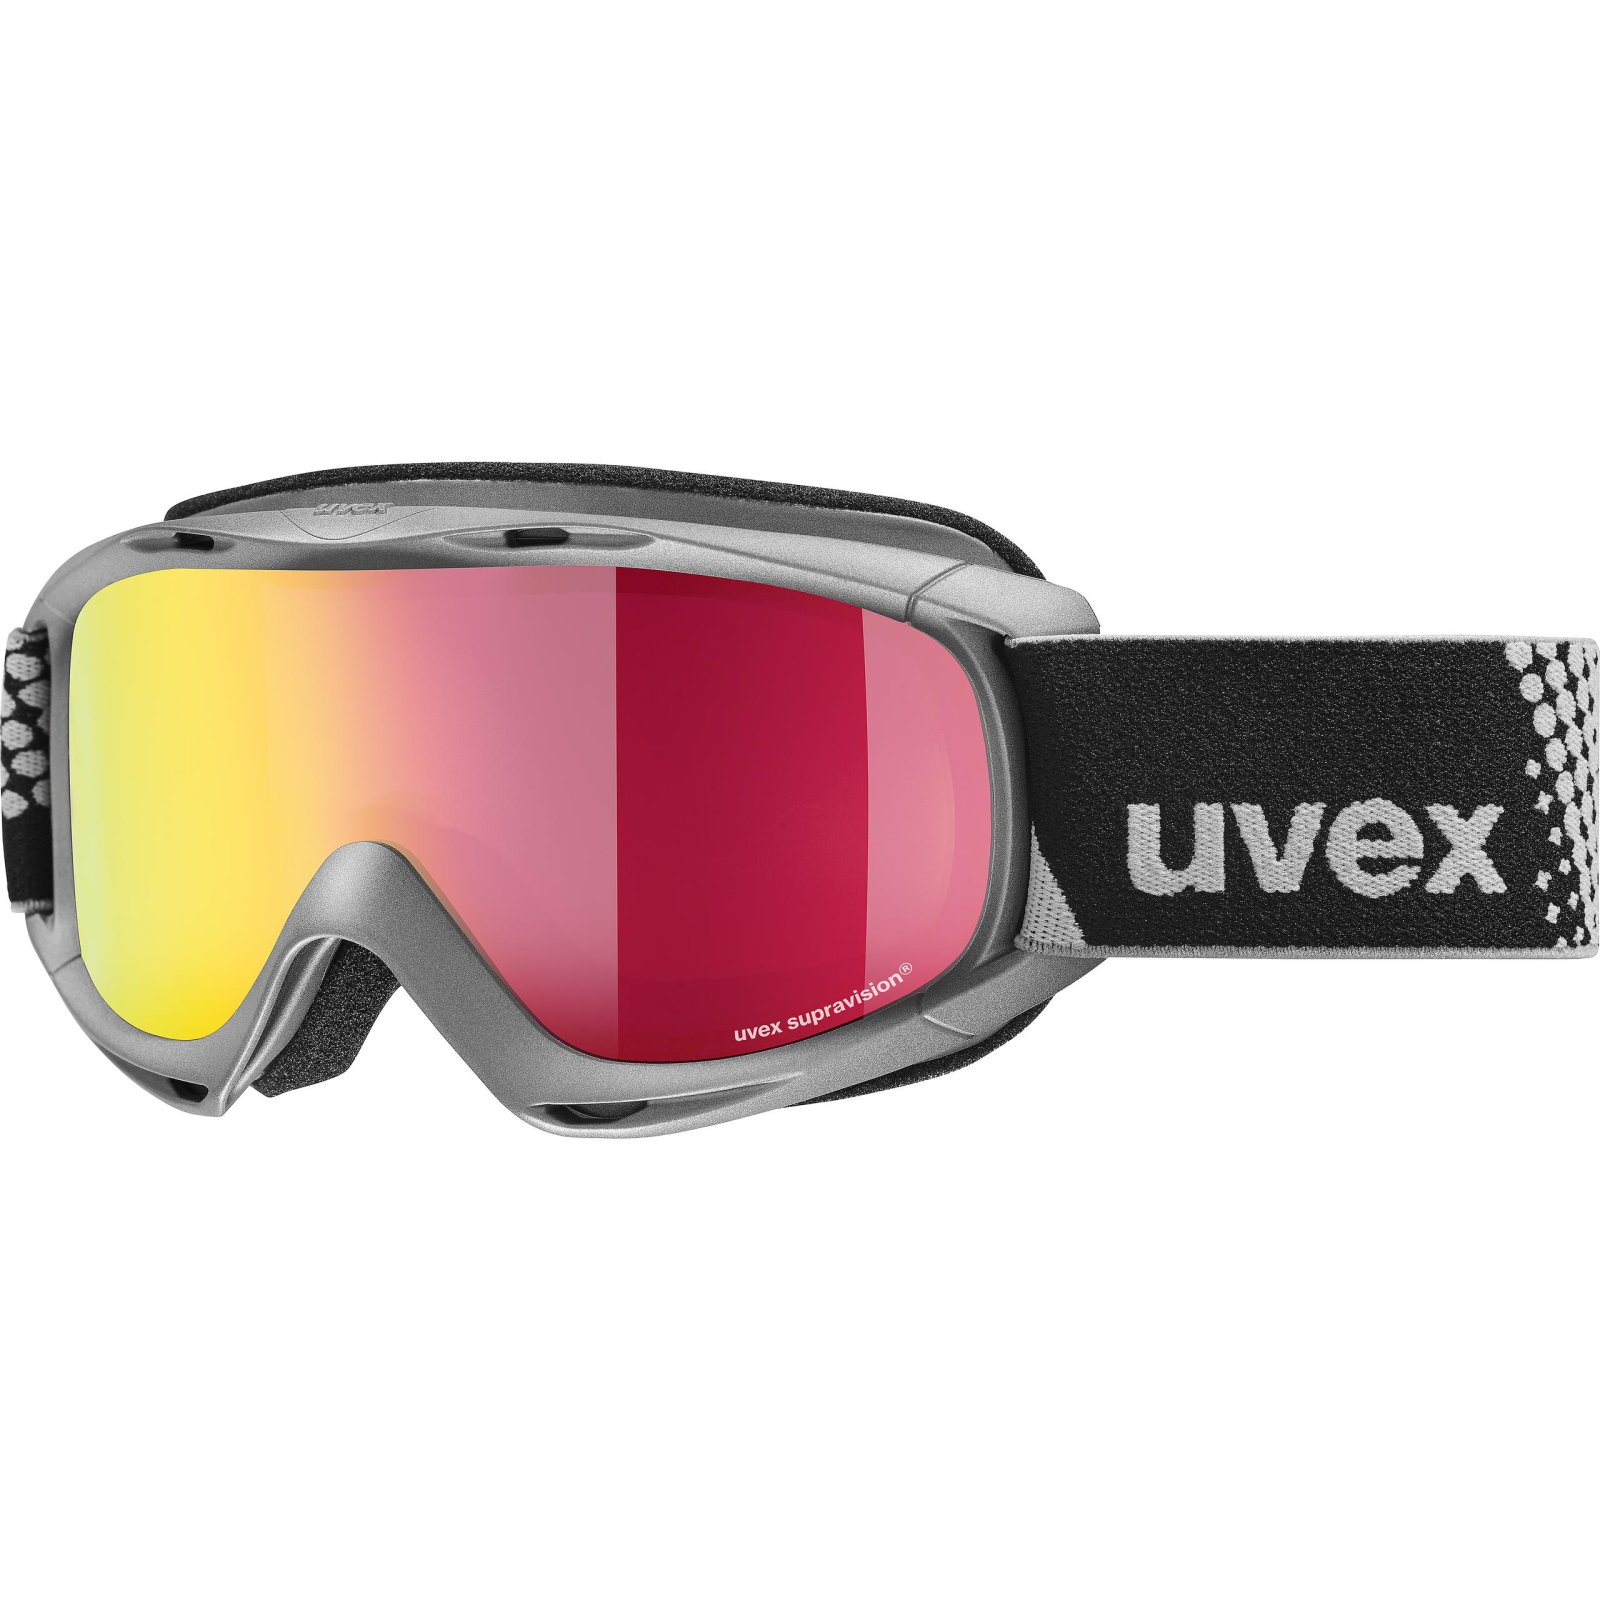 Detské lyžiarske okuliare UVEX slider FM 19/20